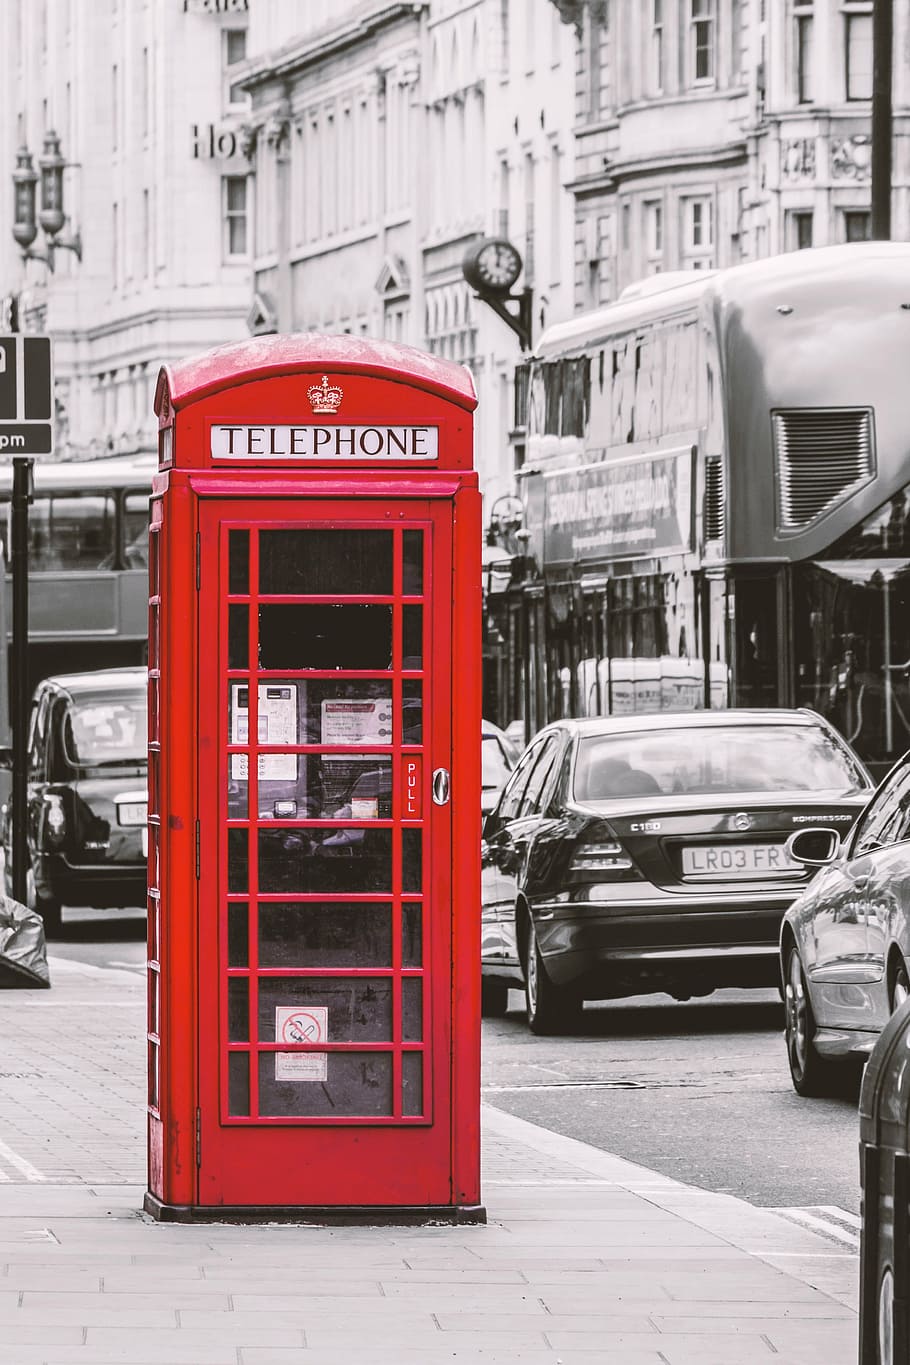 selektif, warna, merah, bilik telepon, london, Inggris, kotak telepon merah, apotik, rumah telepon, telepon